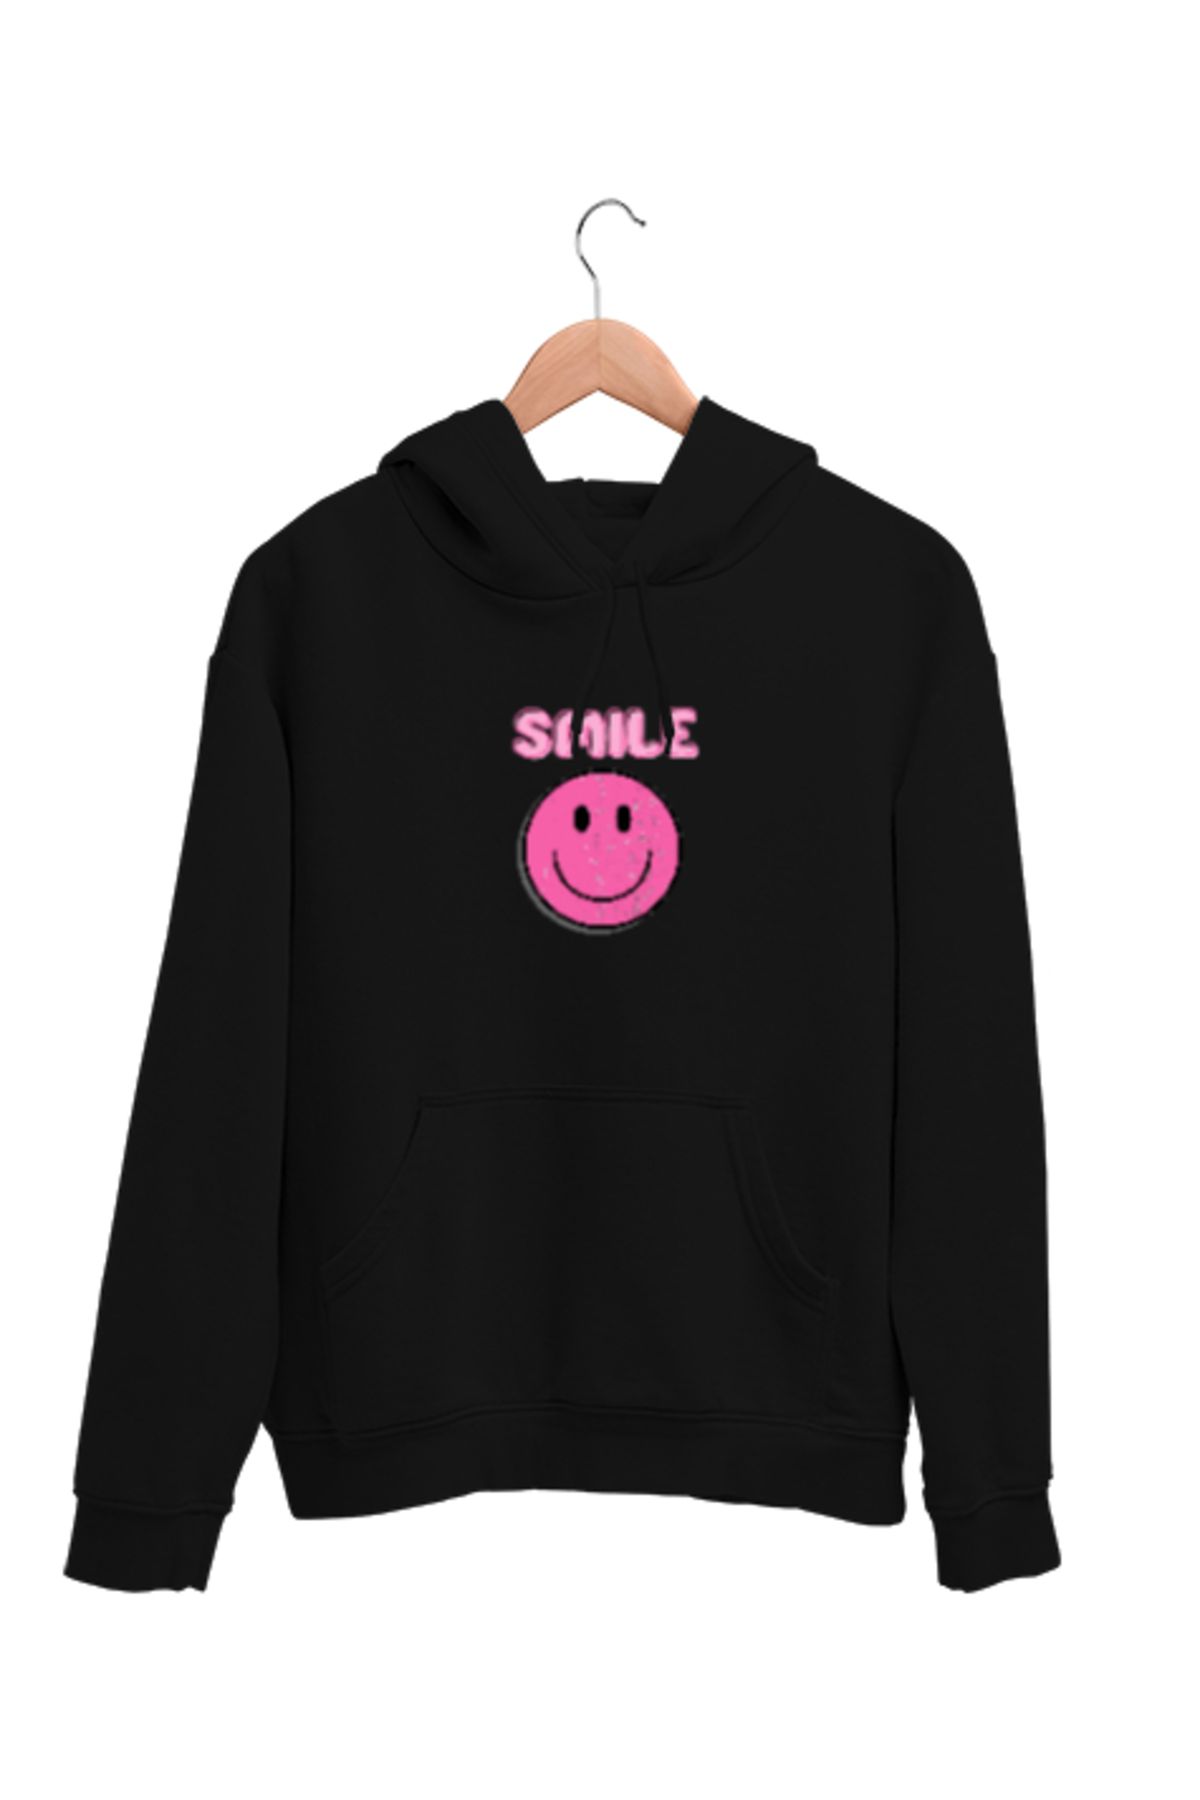 Demal Tekstil Gülümsemek Smile Siyah Unisex Kapşonlu Sweatshirt